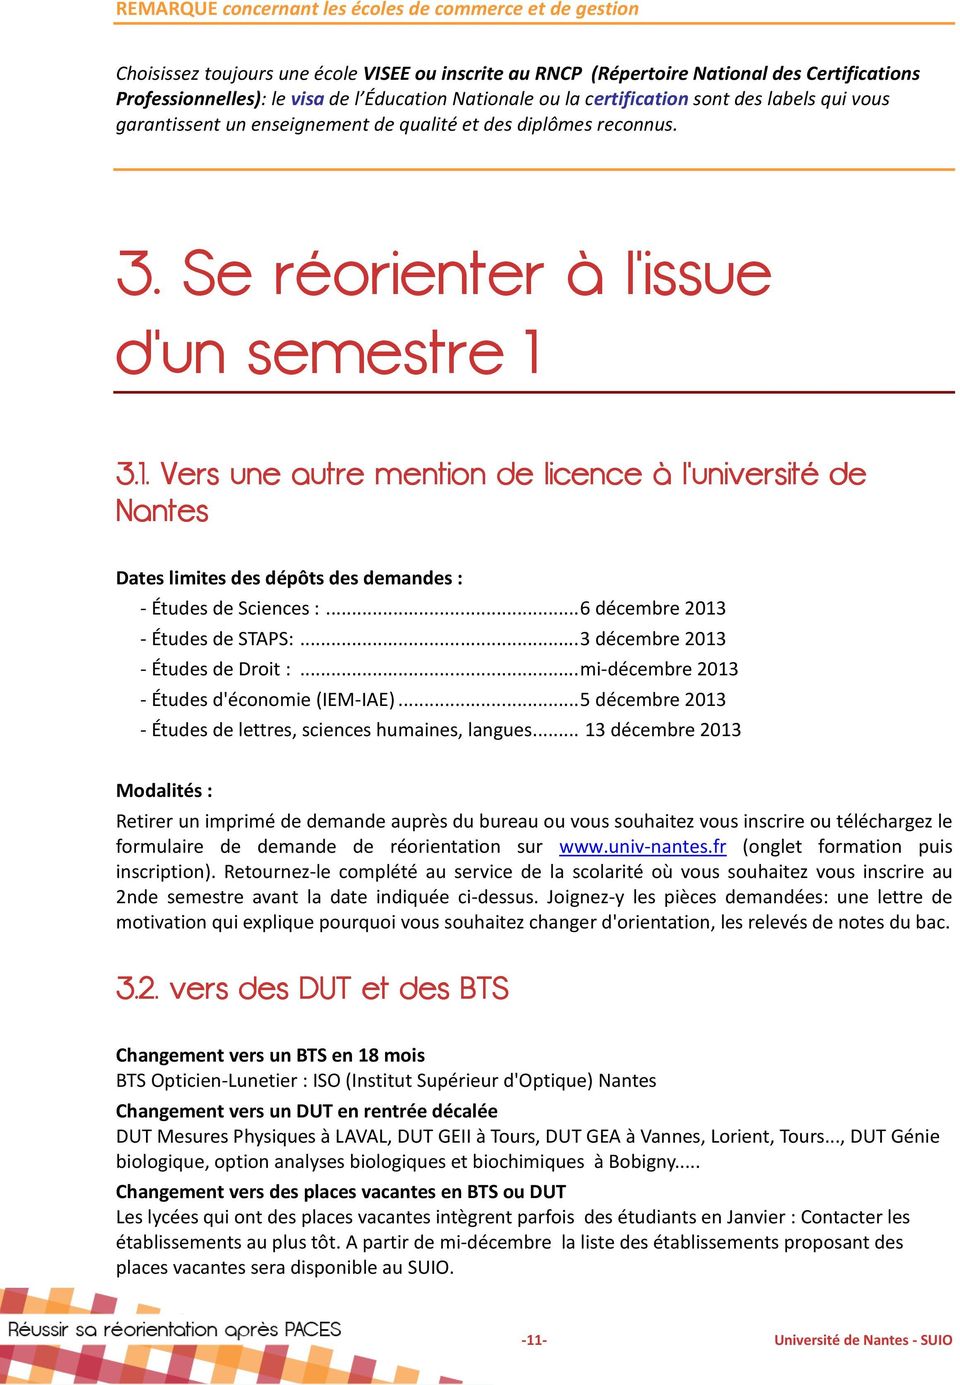 3.1. Vers une autre mention de licence à l'université de Nantes Dates limites des dépôts des demandes : - Études de Sciences :...6 décembre 2013 - Études de STAPS:...3 décembre 2013 - Études de Droit :.